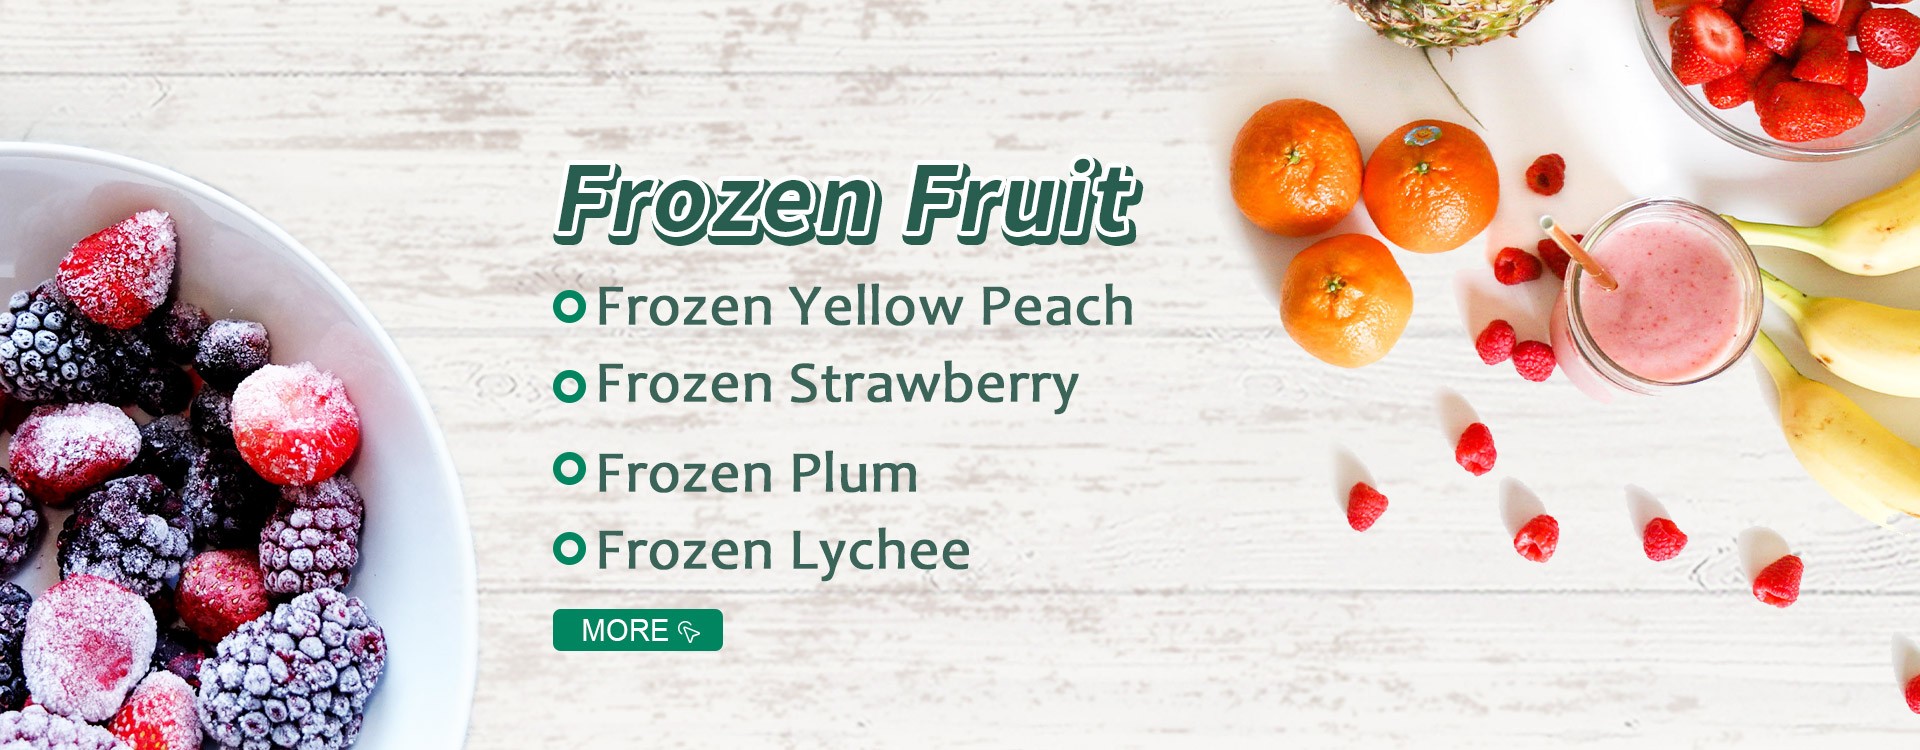 Frutta Congelata